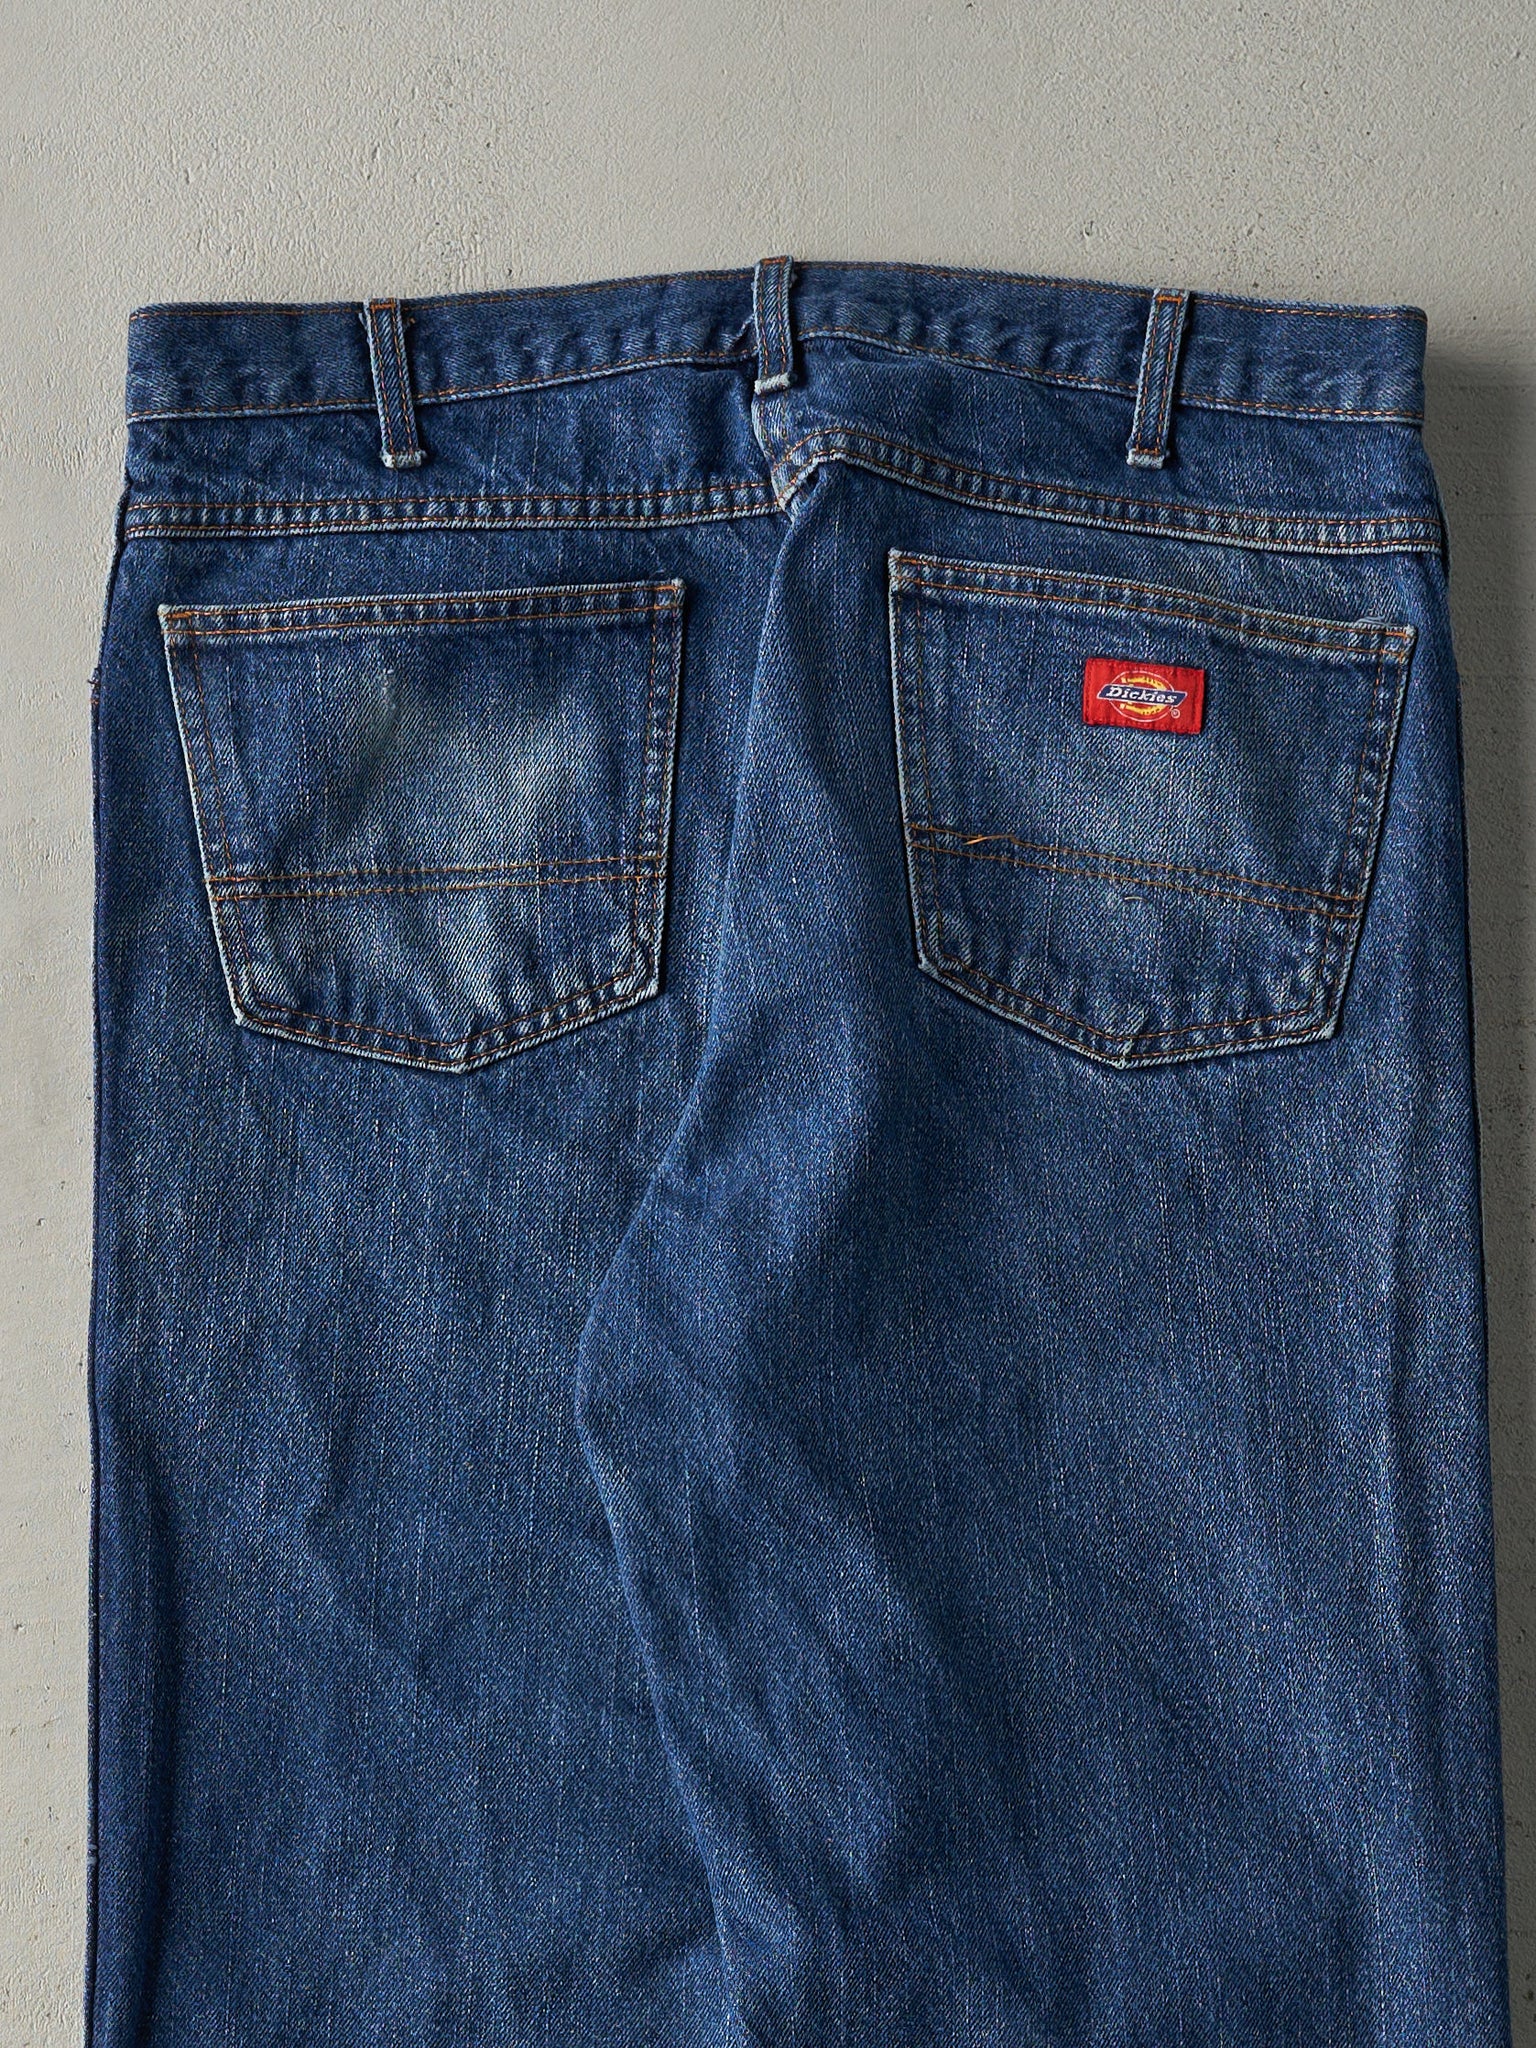 Vintage 90s Mid Wash Dickies Jeans (35x29)